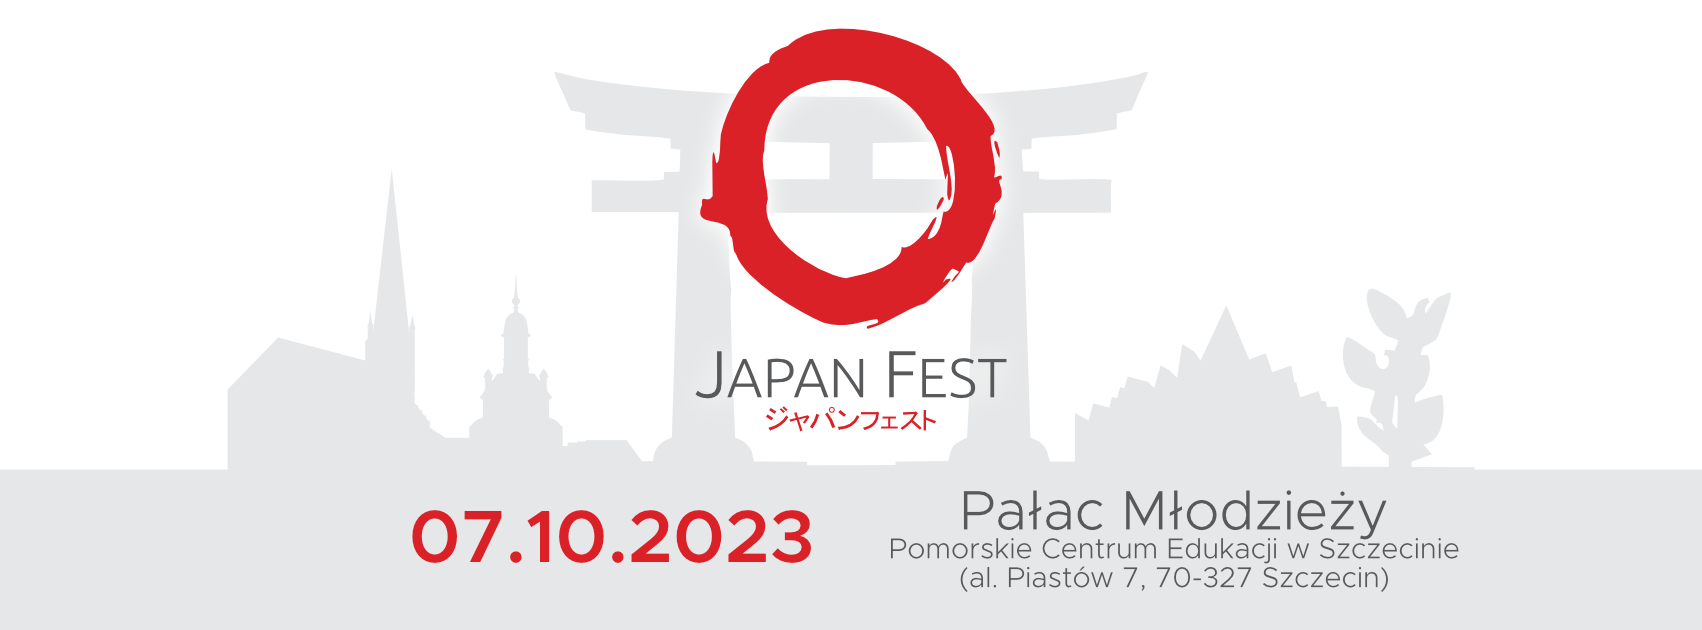 Japan Fest 2023